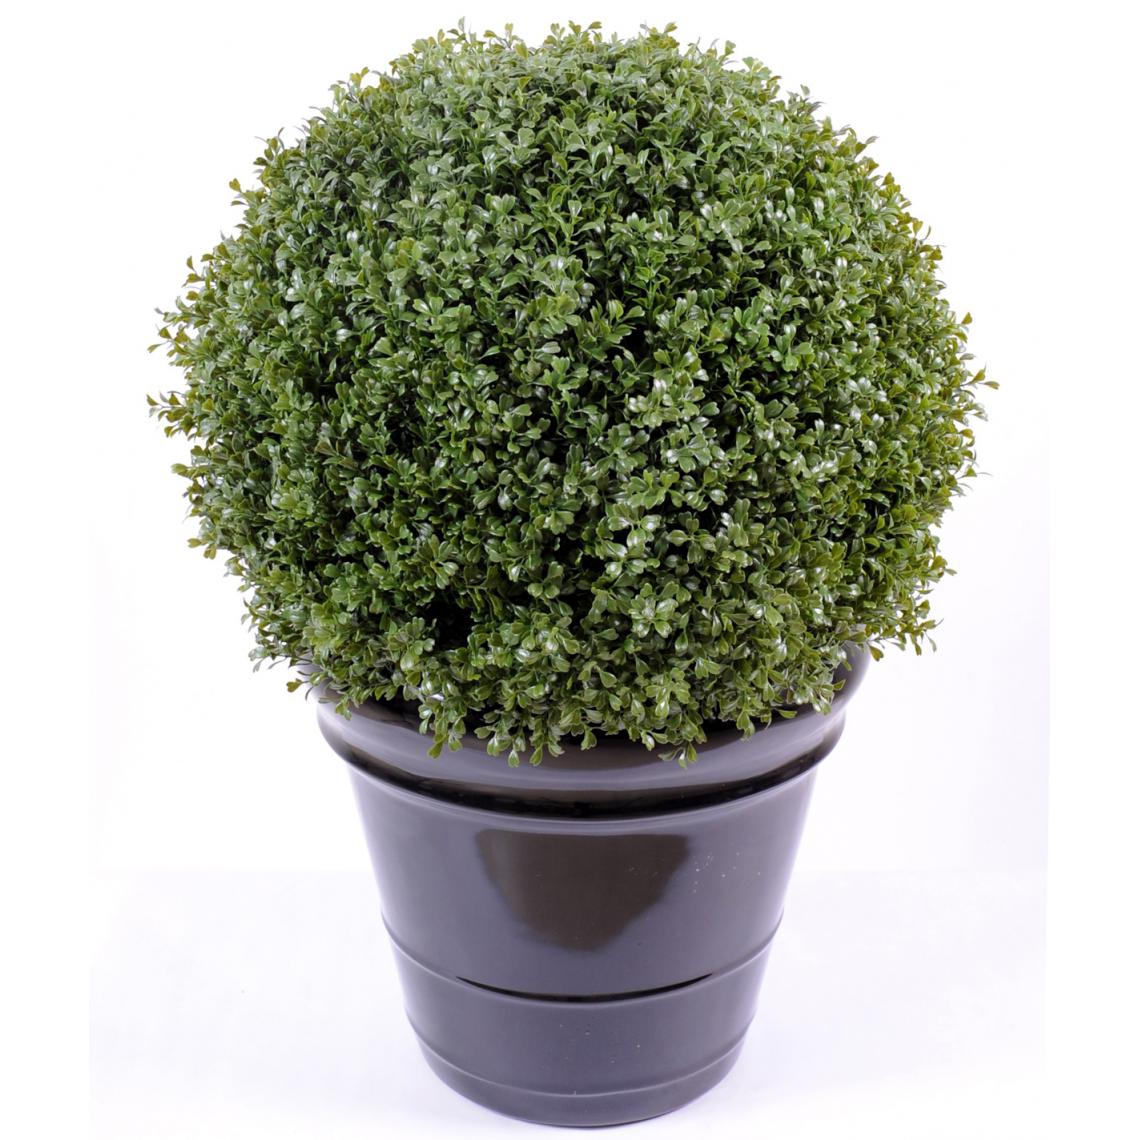 Pegane - Plante artificielle haute gamme Spécial extérieur / Buis boule artificiel - Dim : H.89 x D.65 cm - Plantes et fleurs artificielles